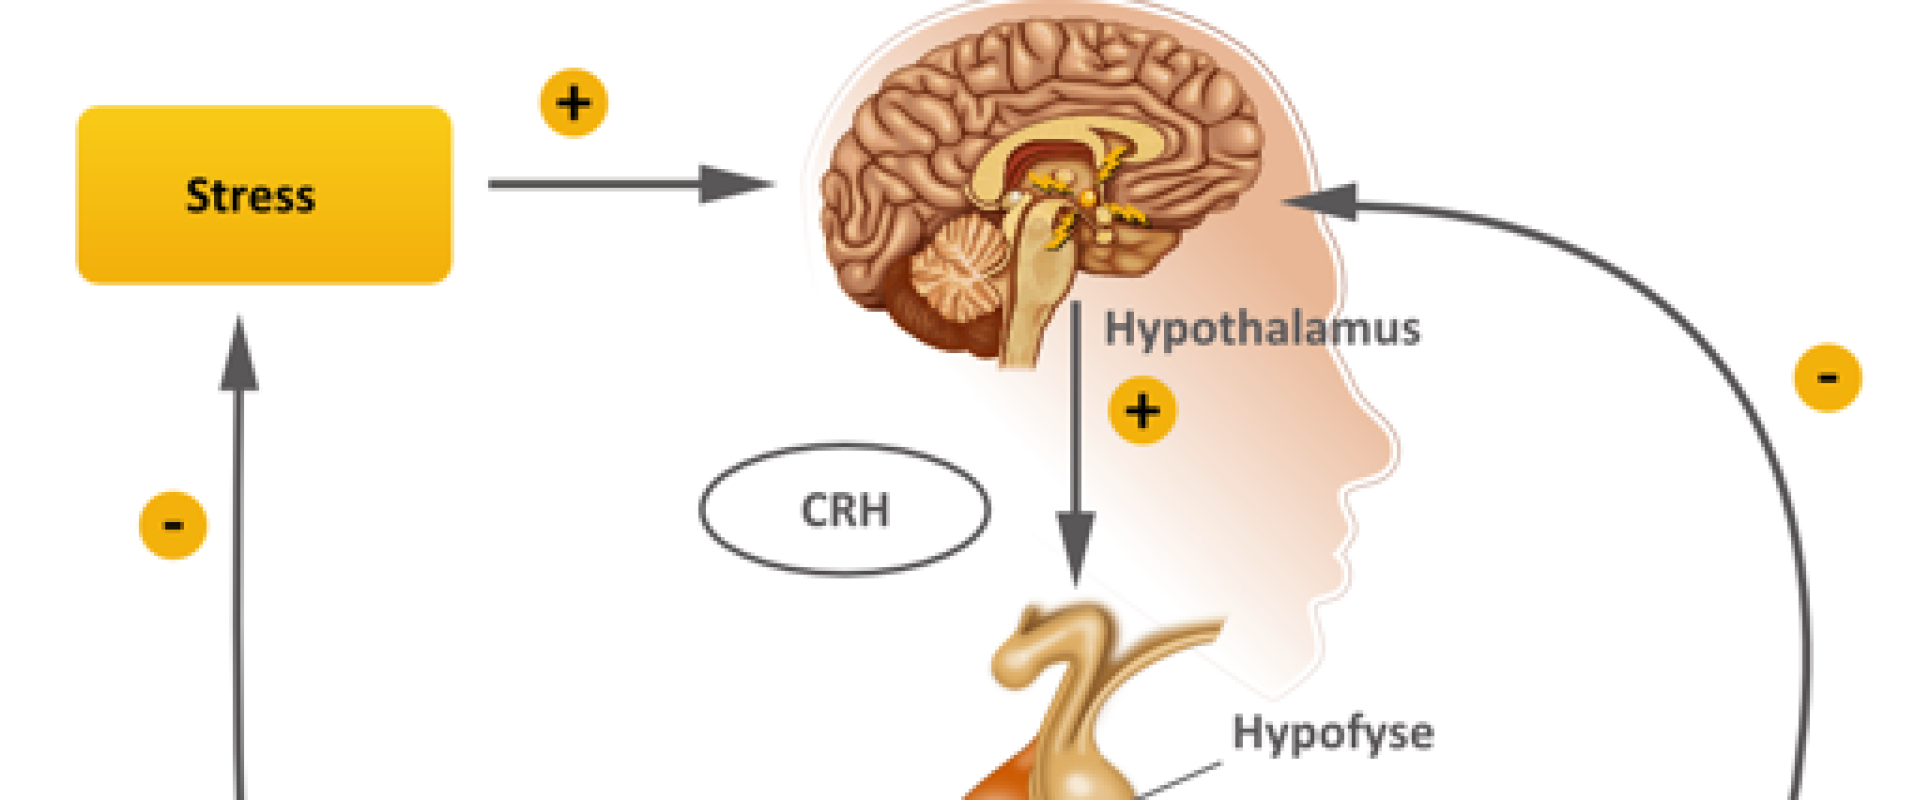 Het Stress-systeem, de HPA as en Serotonine